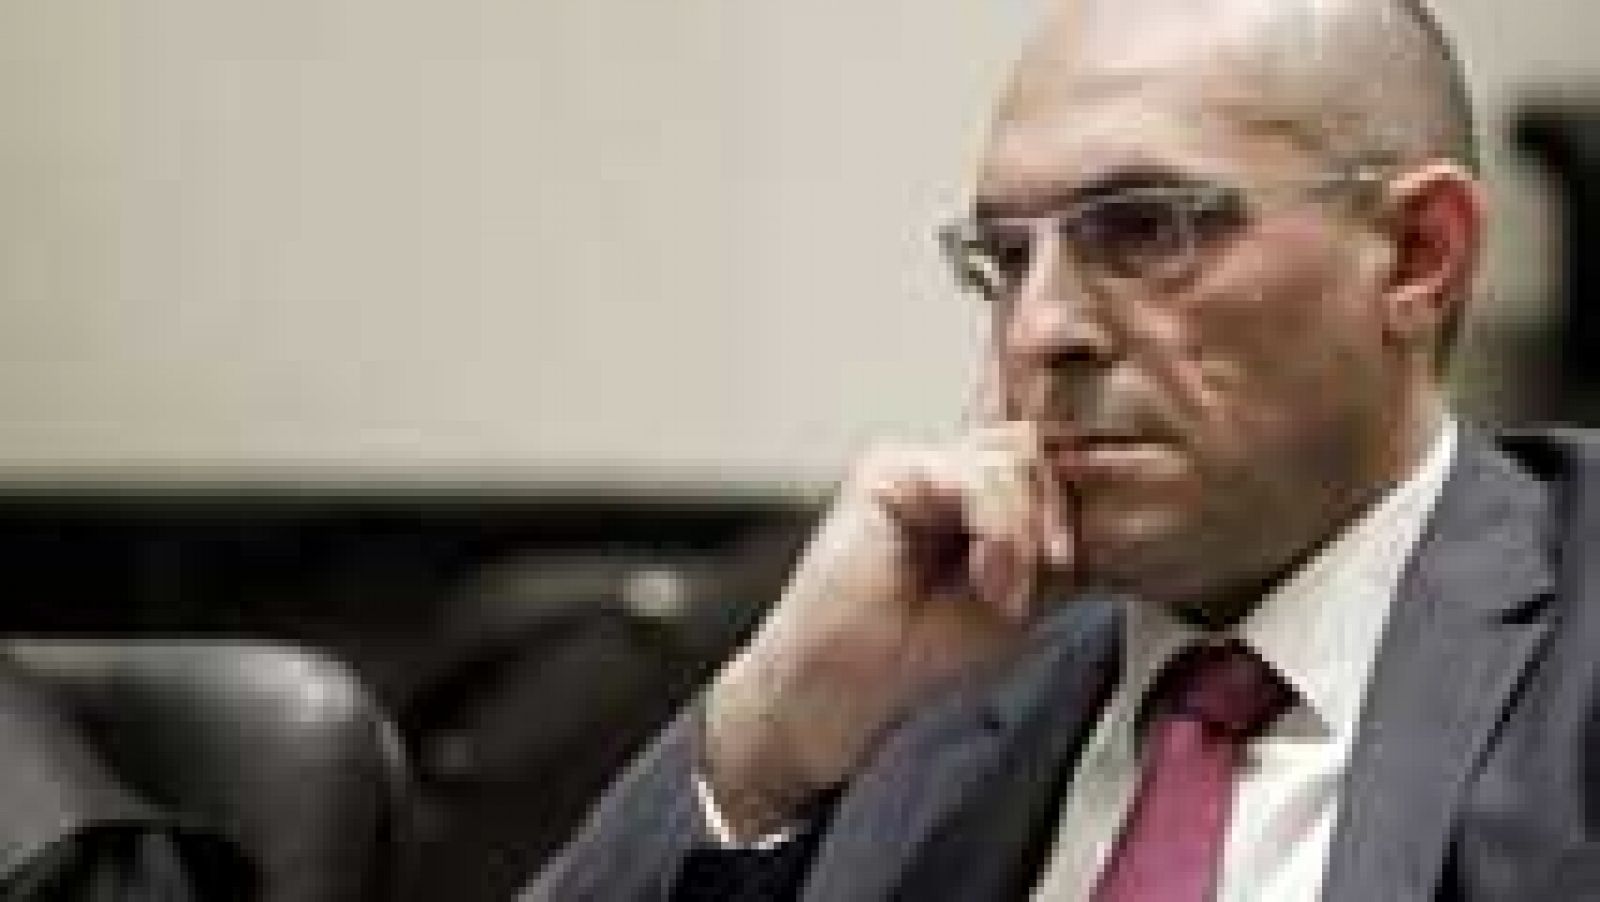 El juez Elpidio Silva mantiene que la decisión de encarcelar al ex presidente de Caja Madrid fue correcta y razonada